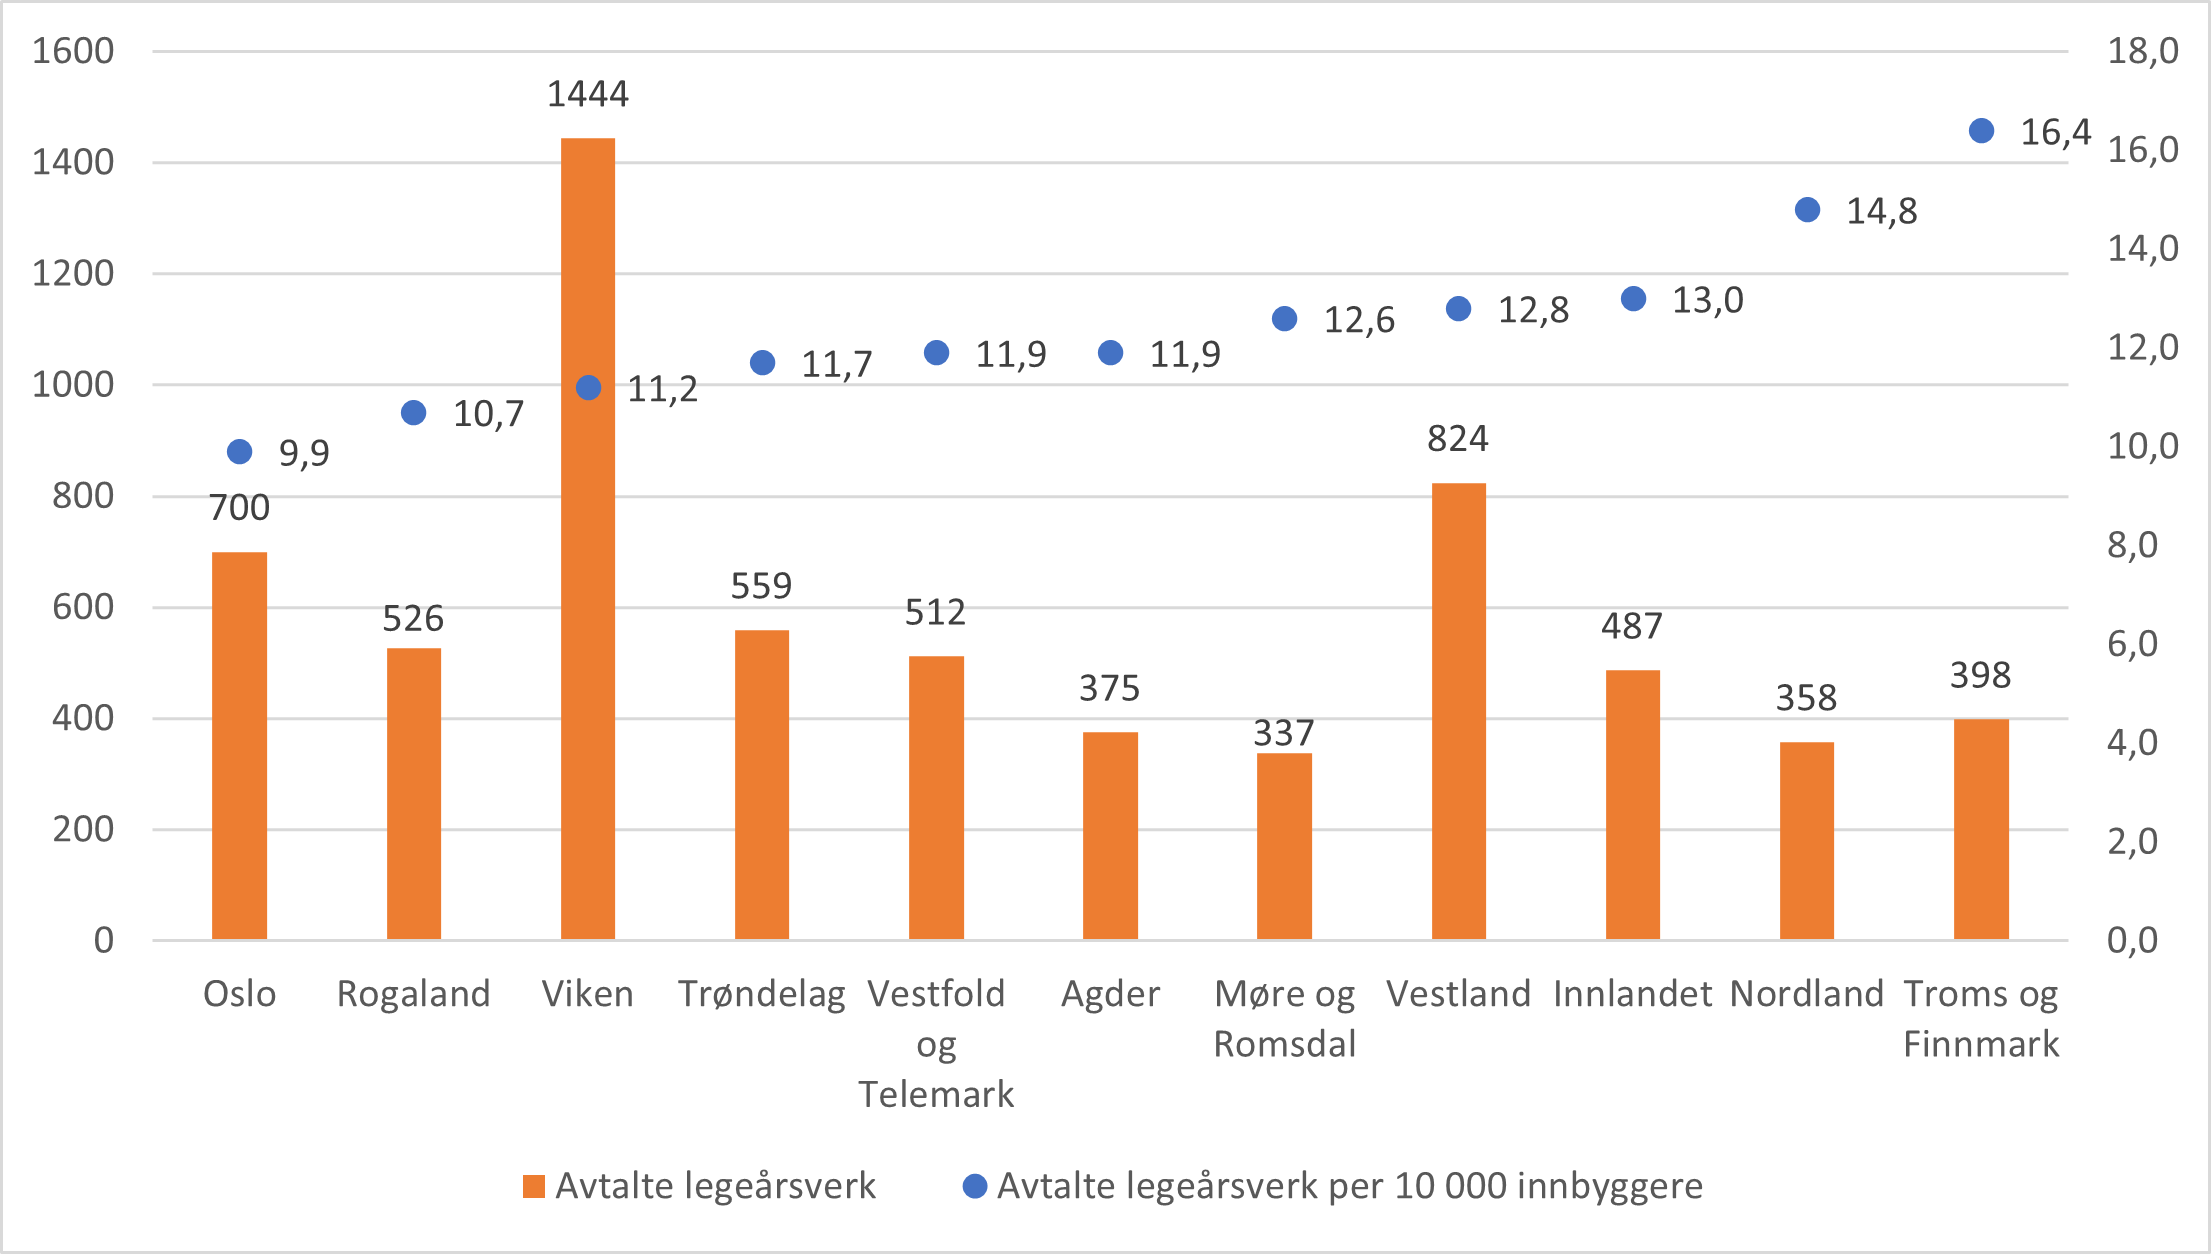 Avtalte legeårsverk og avtalte legeårsverk per 10 000 innbyggere, fordelt på fylker. 2022